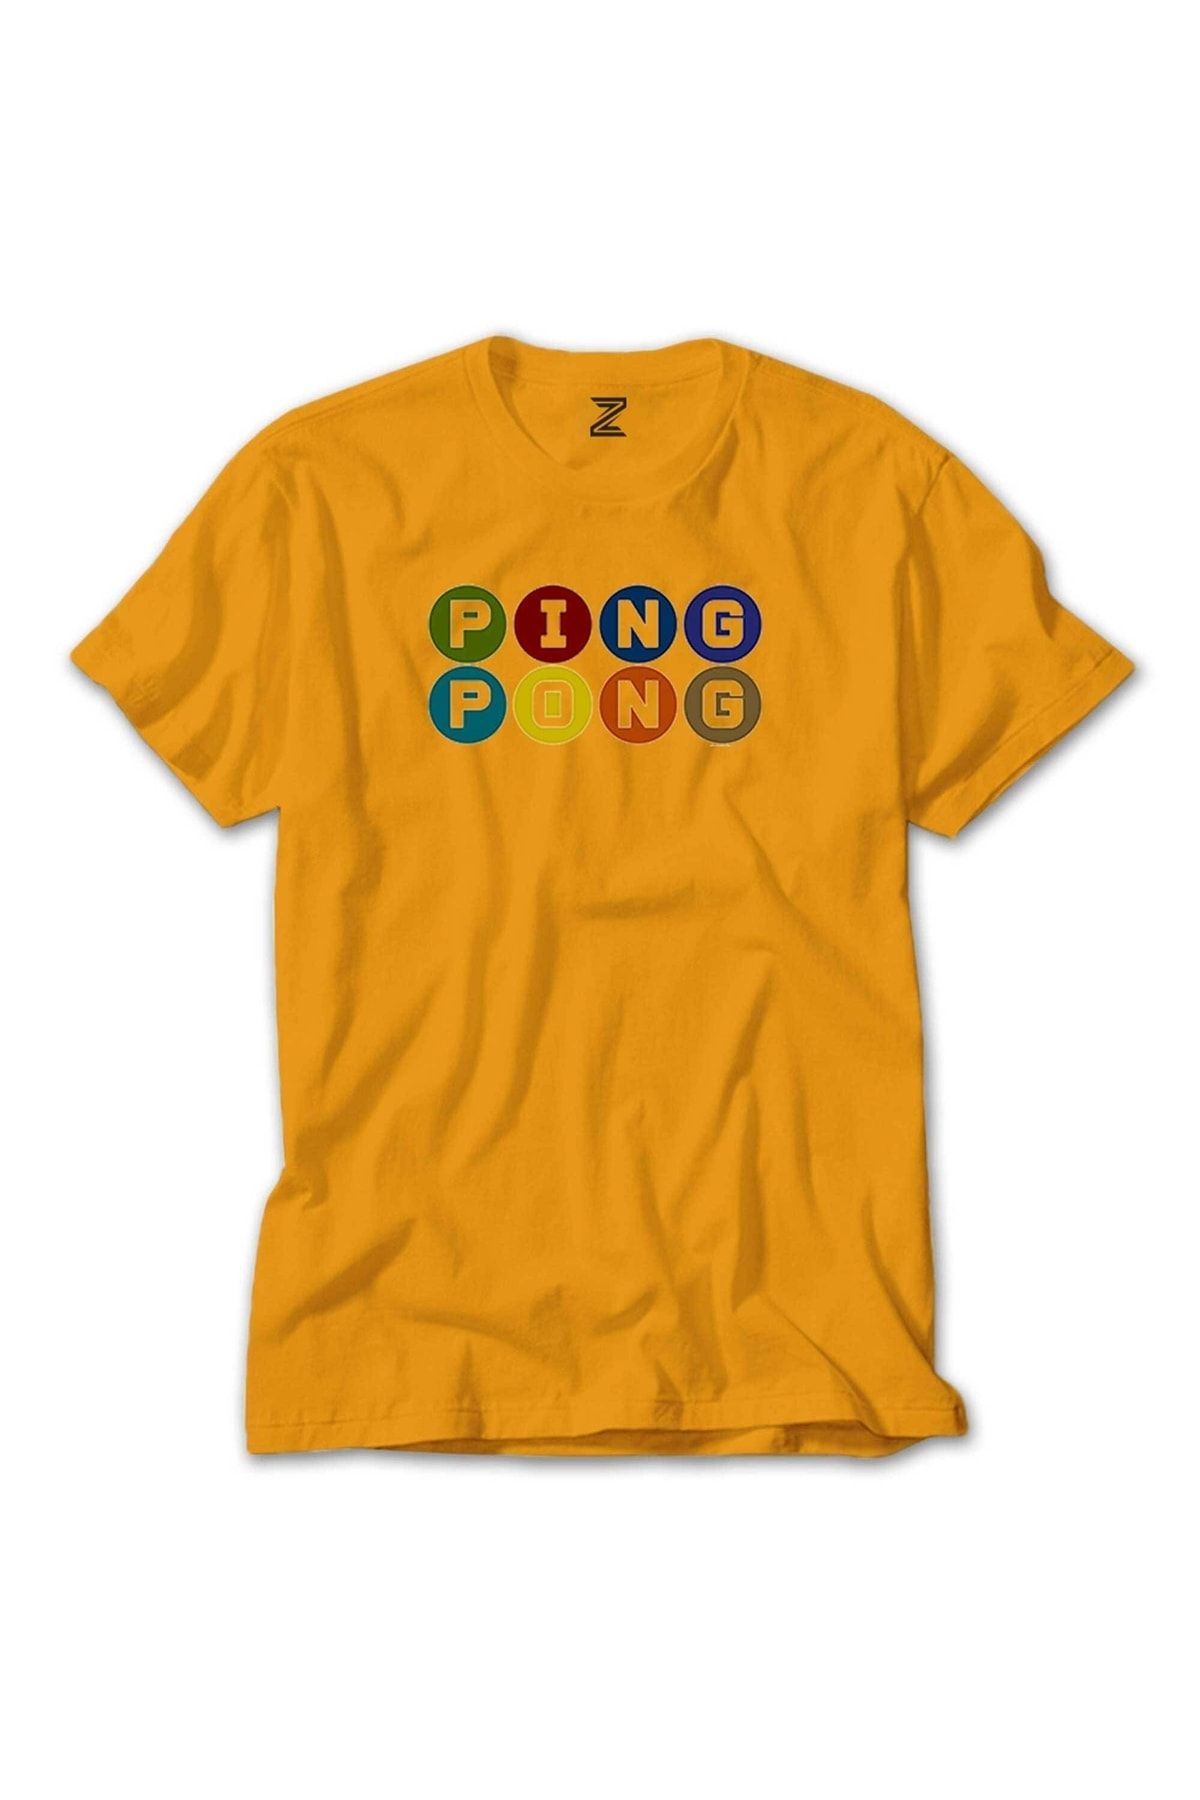 Z zepplin Ping Pong Text Colored Sarı Tişört